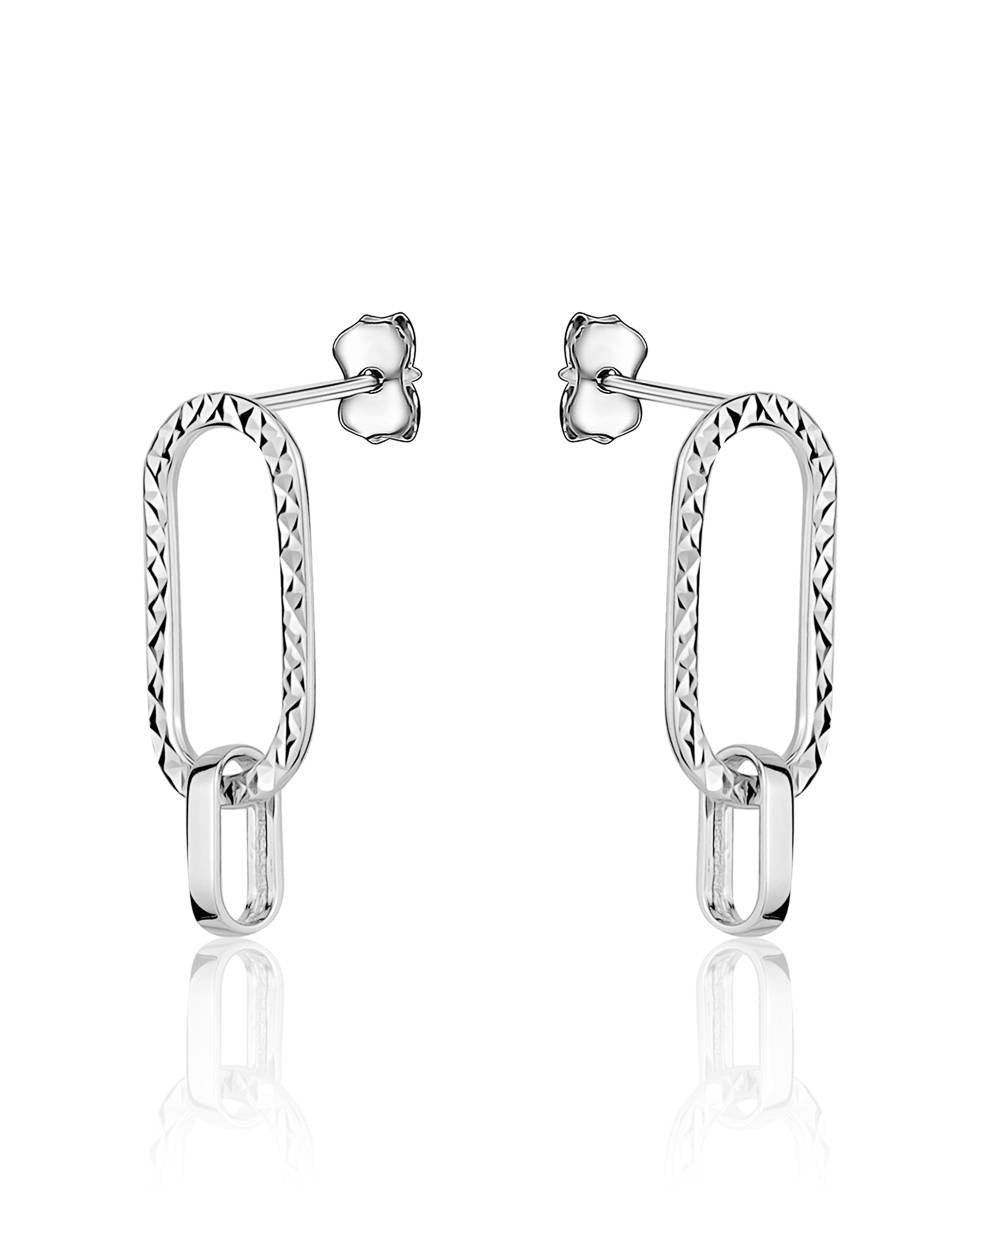 Chain Link Earrings!